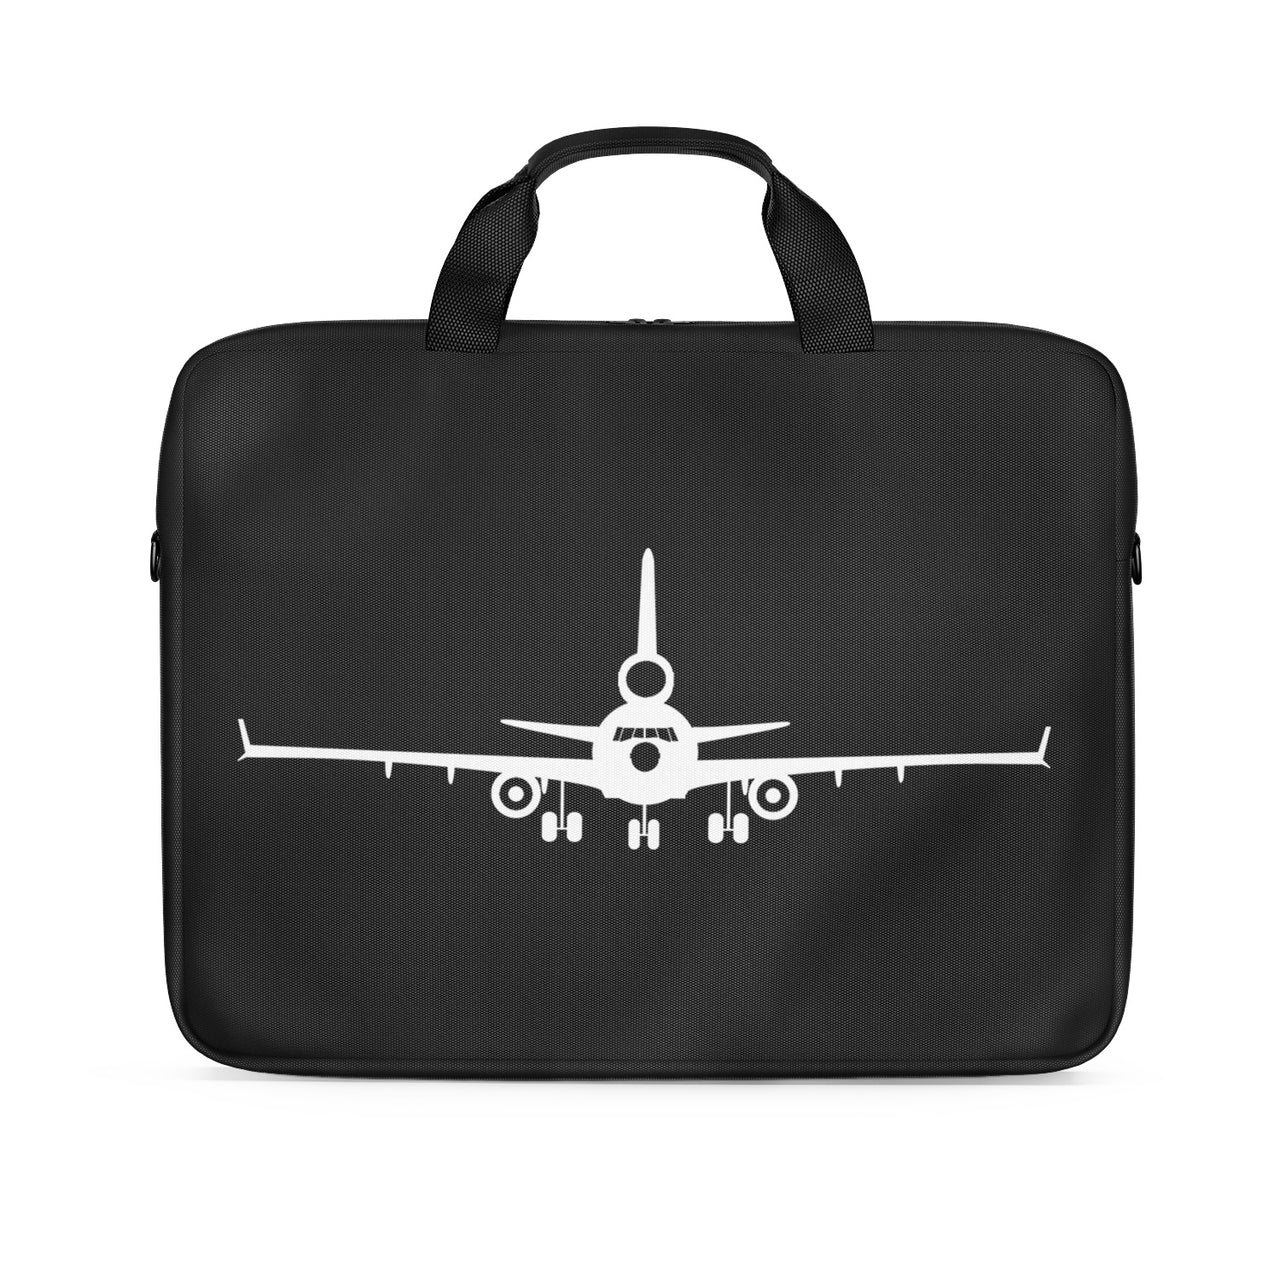 McDonnell Douglas MD-11 Silhouette Plane Designed Laptop & Tablet Bags